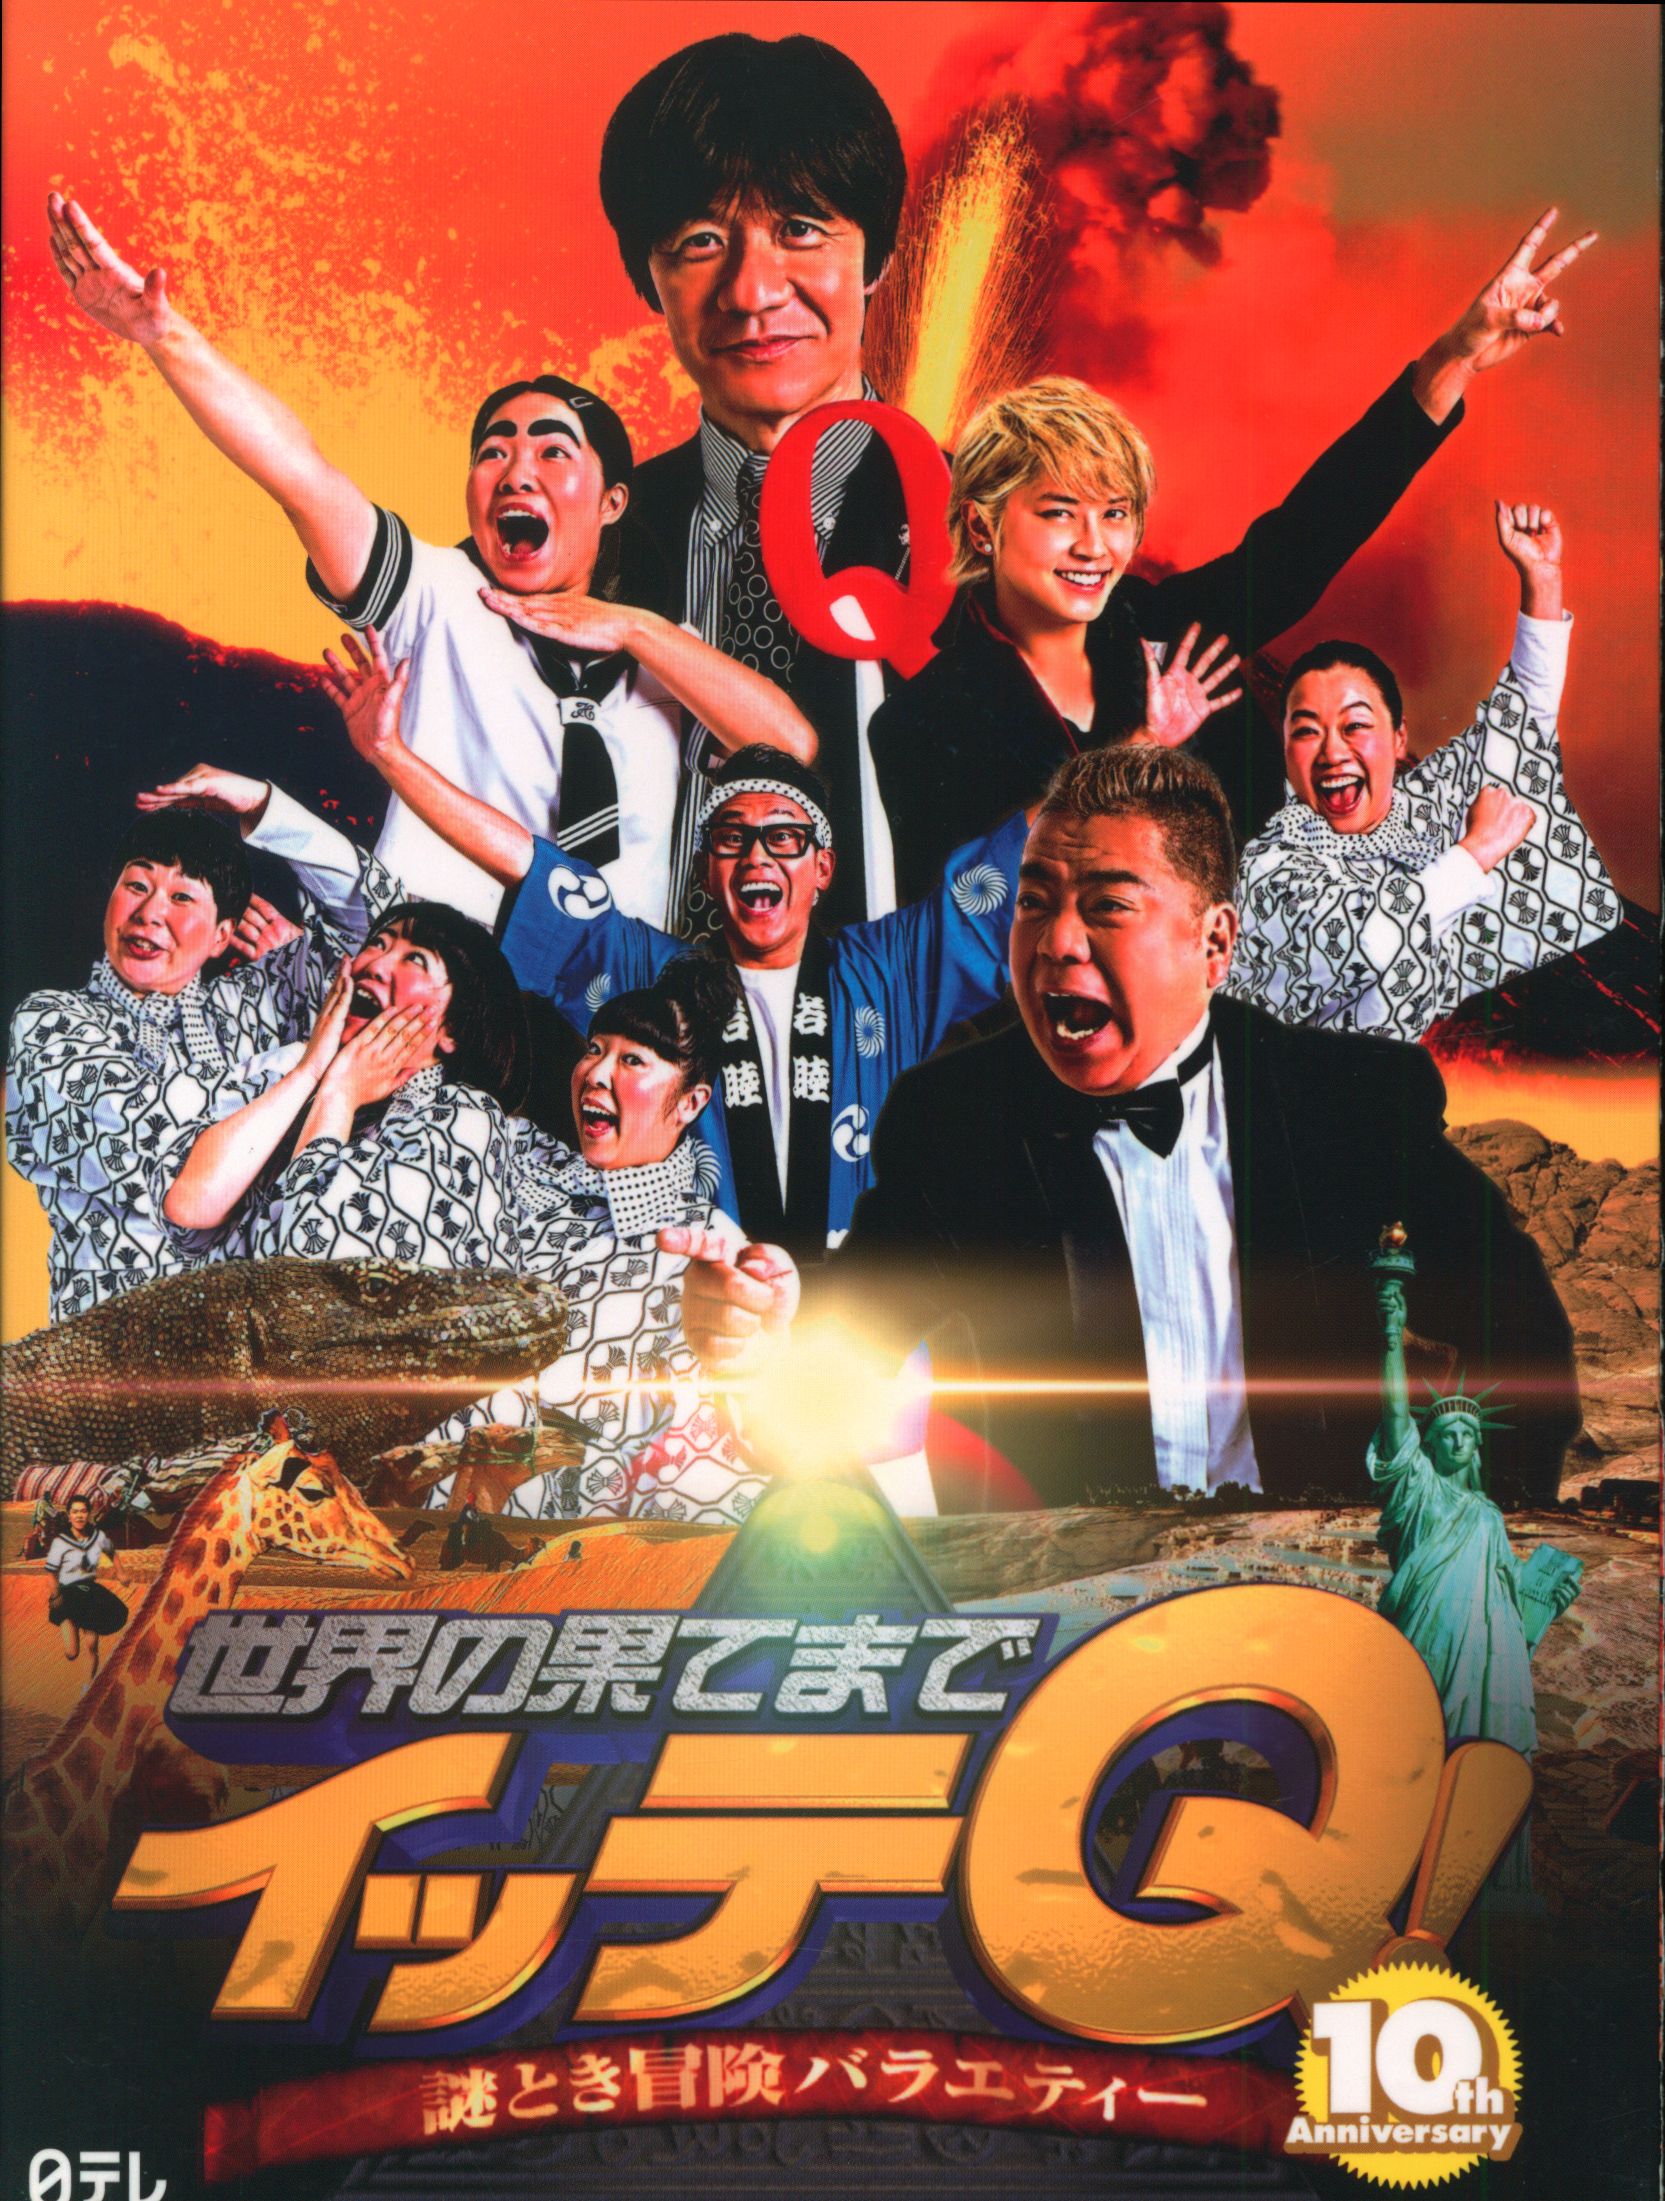 世界の果てまでイッテQ! DVD Vol.1〜Vol.6セット - お笑い/バラエティ